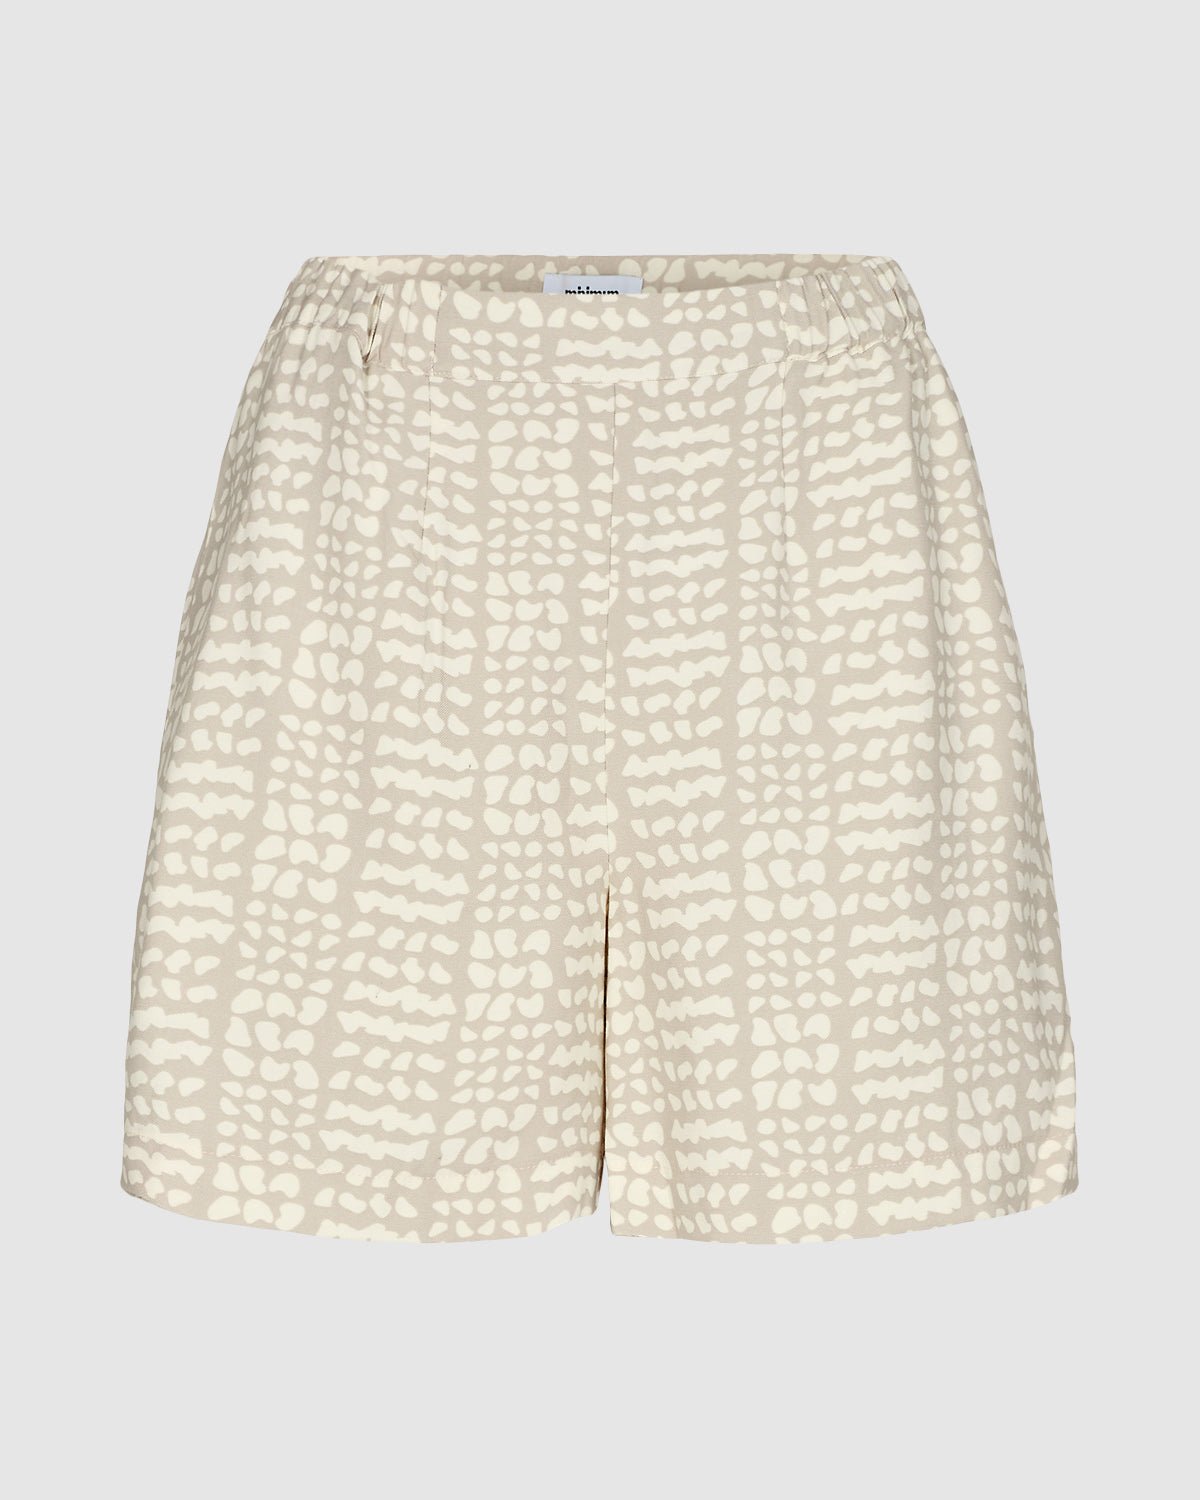 MINIMUM - Locoa shorts 9735 - Boutique Bubbles